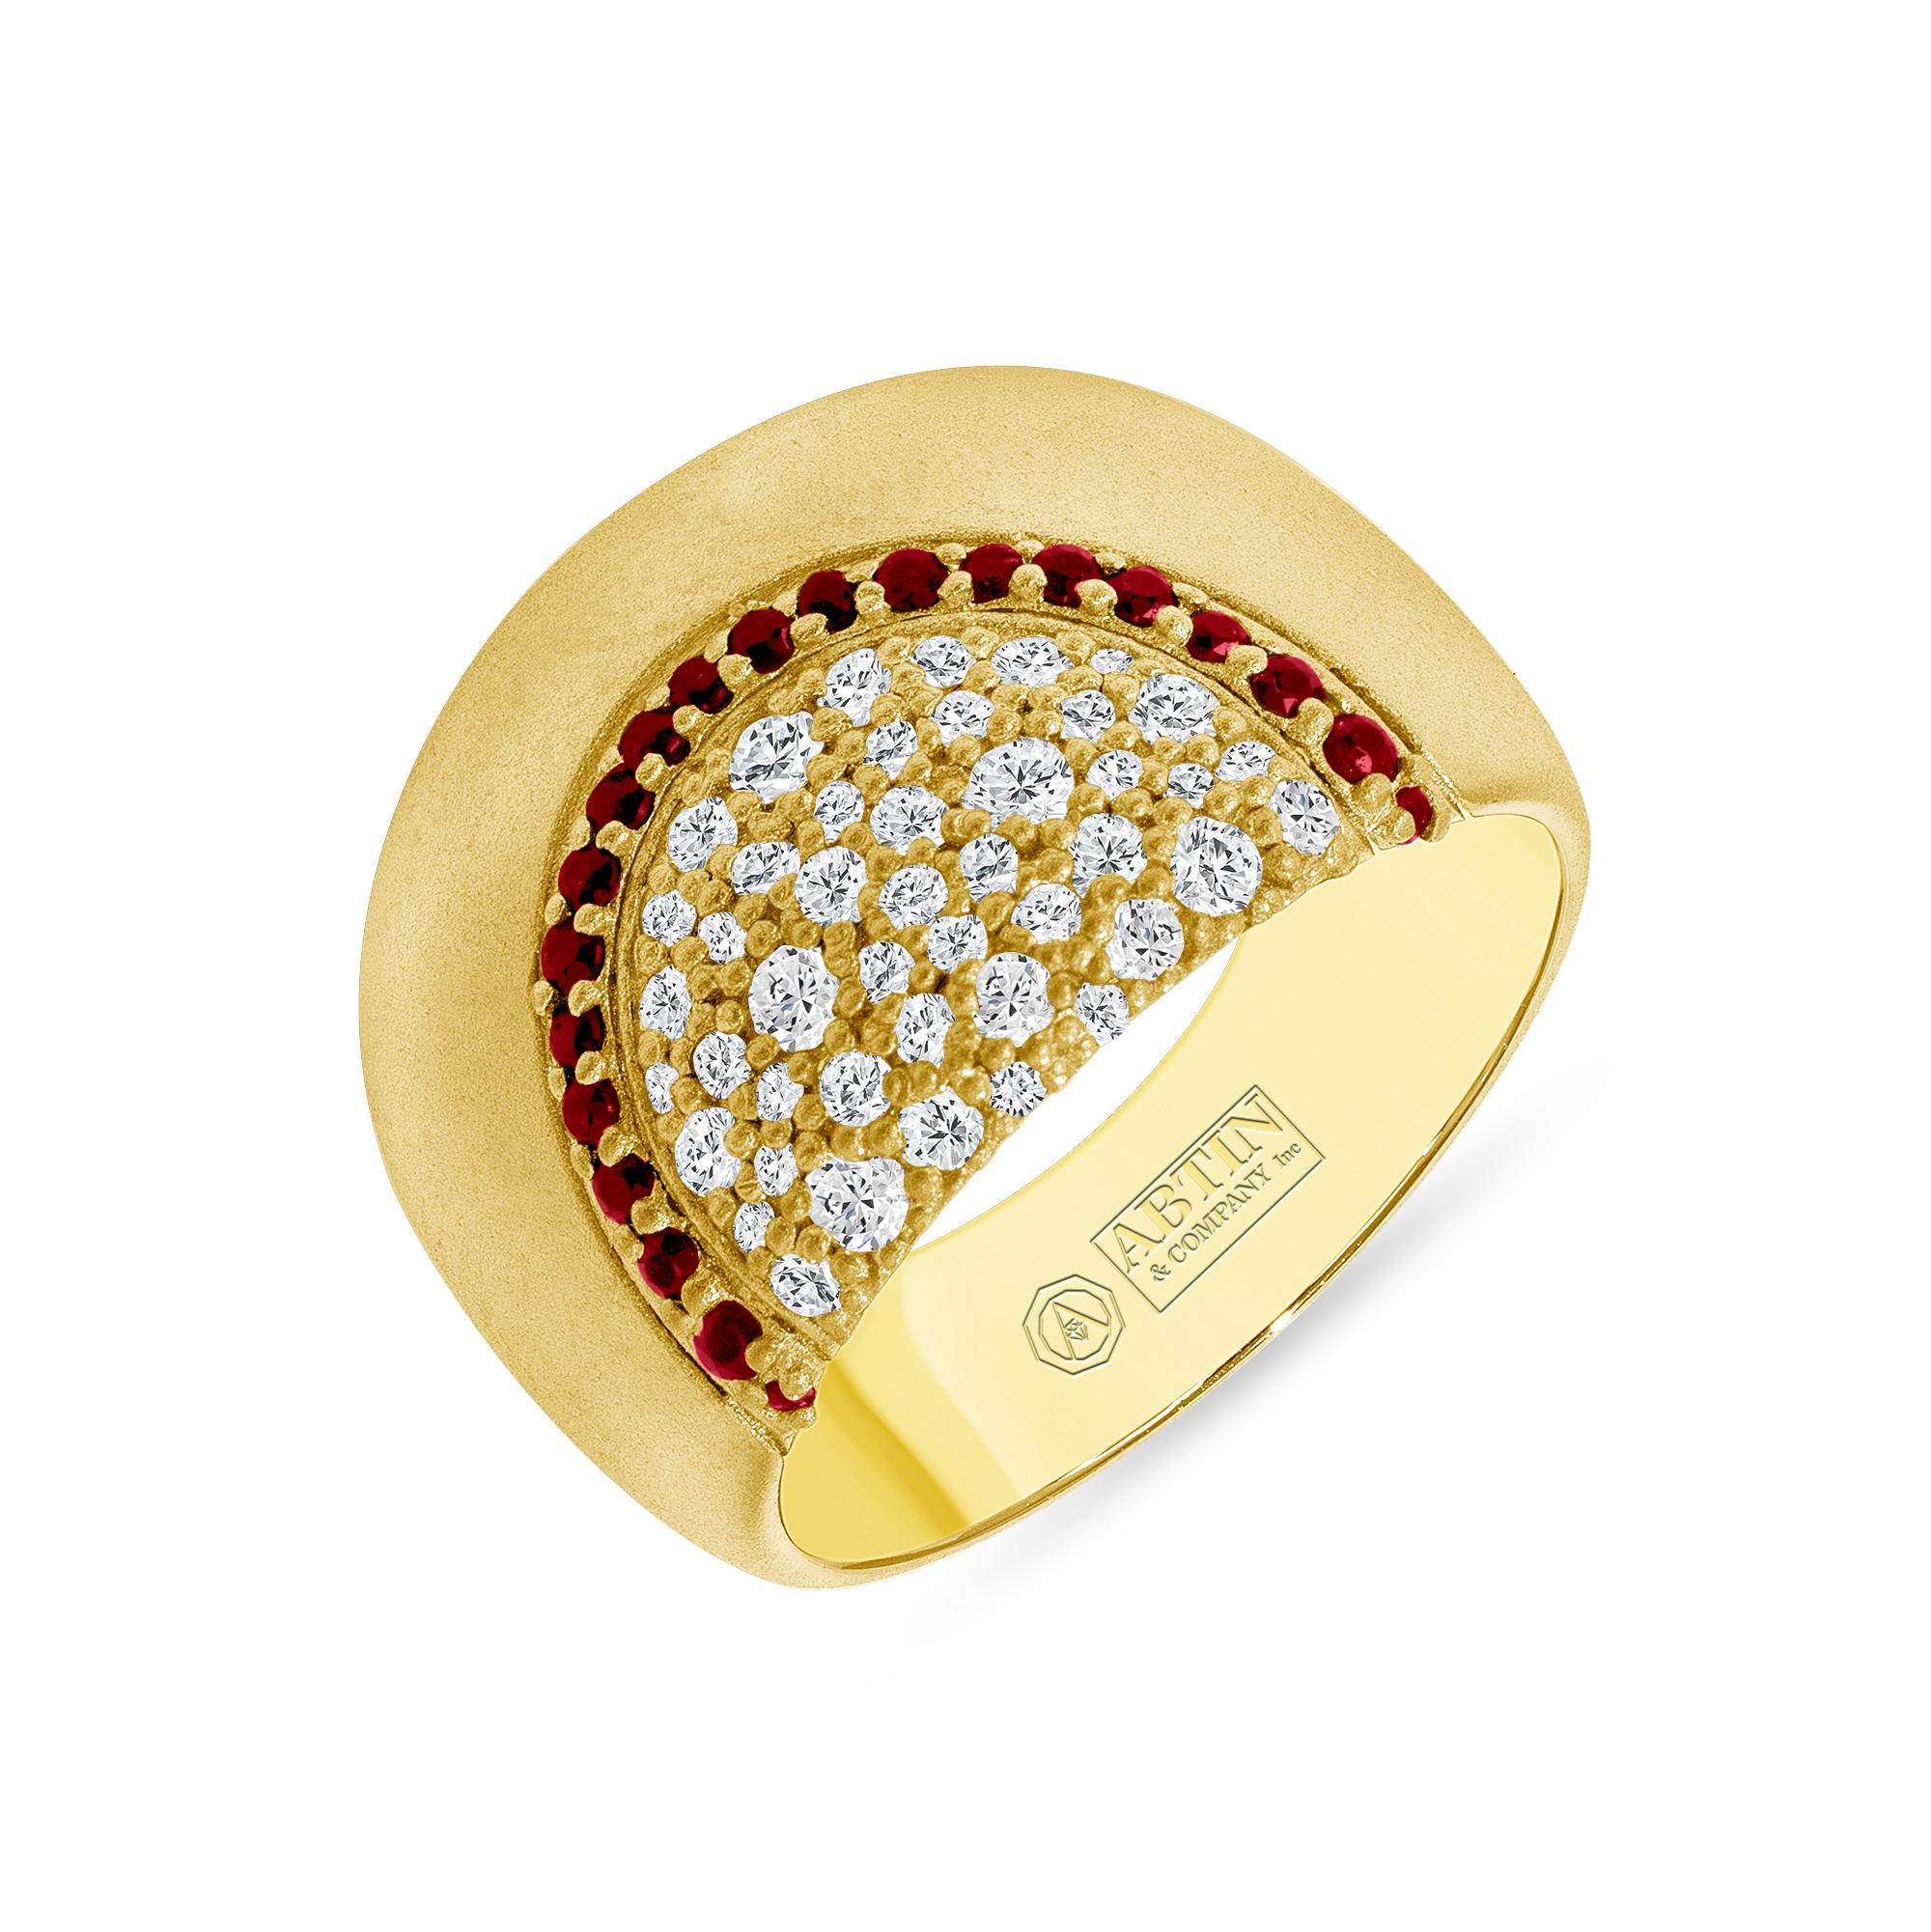 Dieser exquisite Ring aus 14-karätigem Gold zeichnet sich durch eine schillernde Anordnung von 0,68 Karat Diamanten und Smaragden aus. Sein hochgewölbtes Design funkelt mit runden Brillanten und Smaragden im Rundschliff. Das satte, satinierte Grün